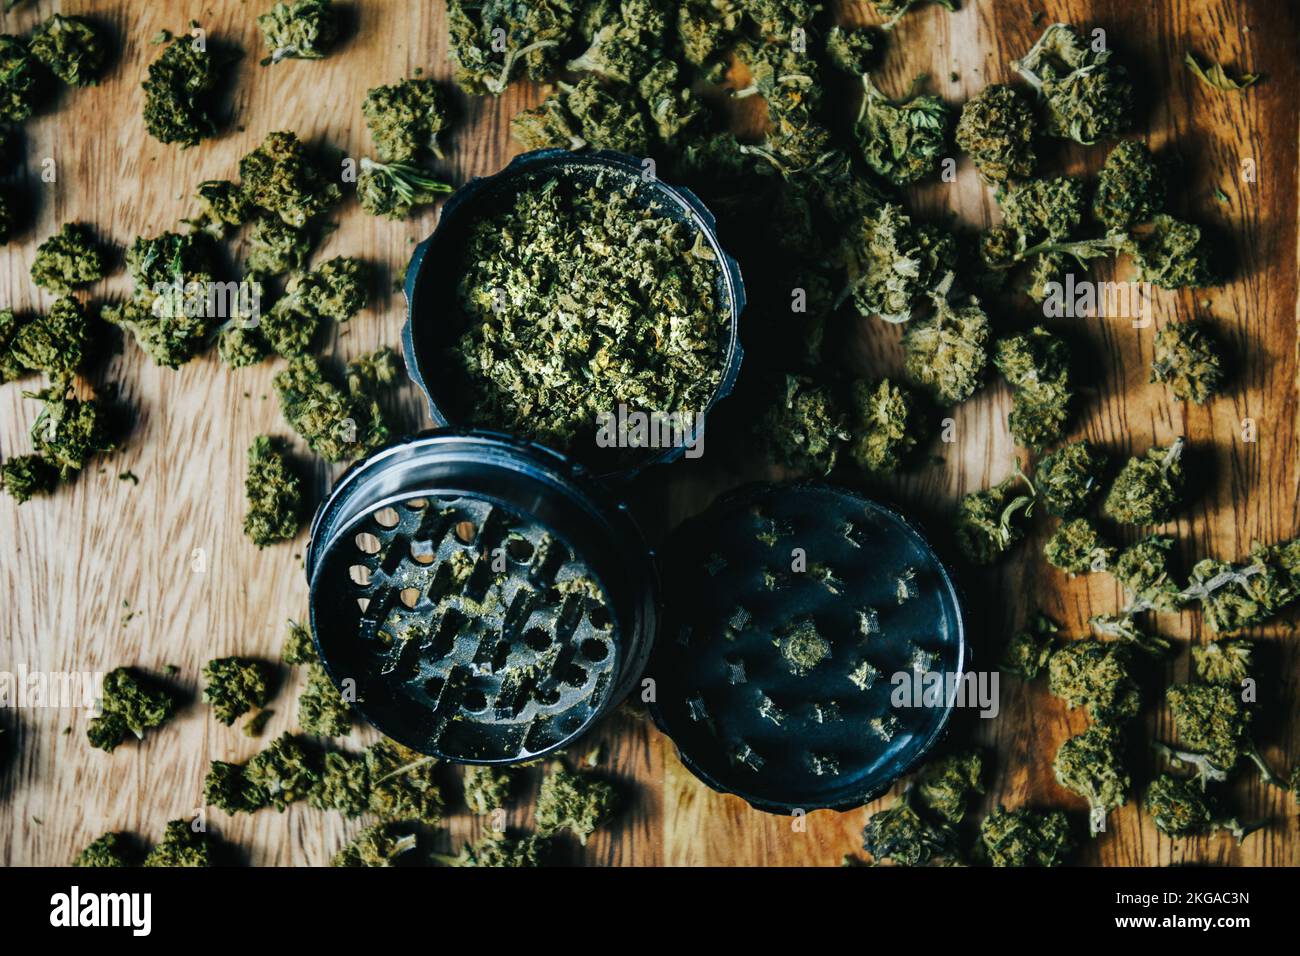 Brotes de marihuana con drogas, cbd y thc. Molinillo y drogas Foto de stock